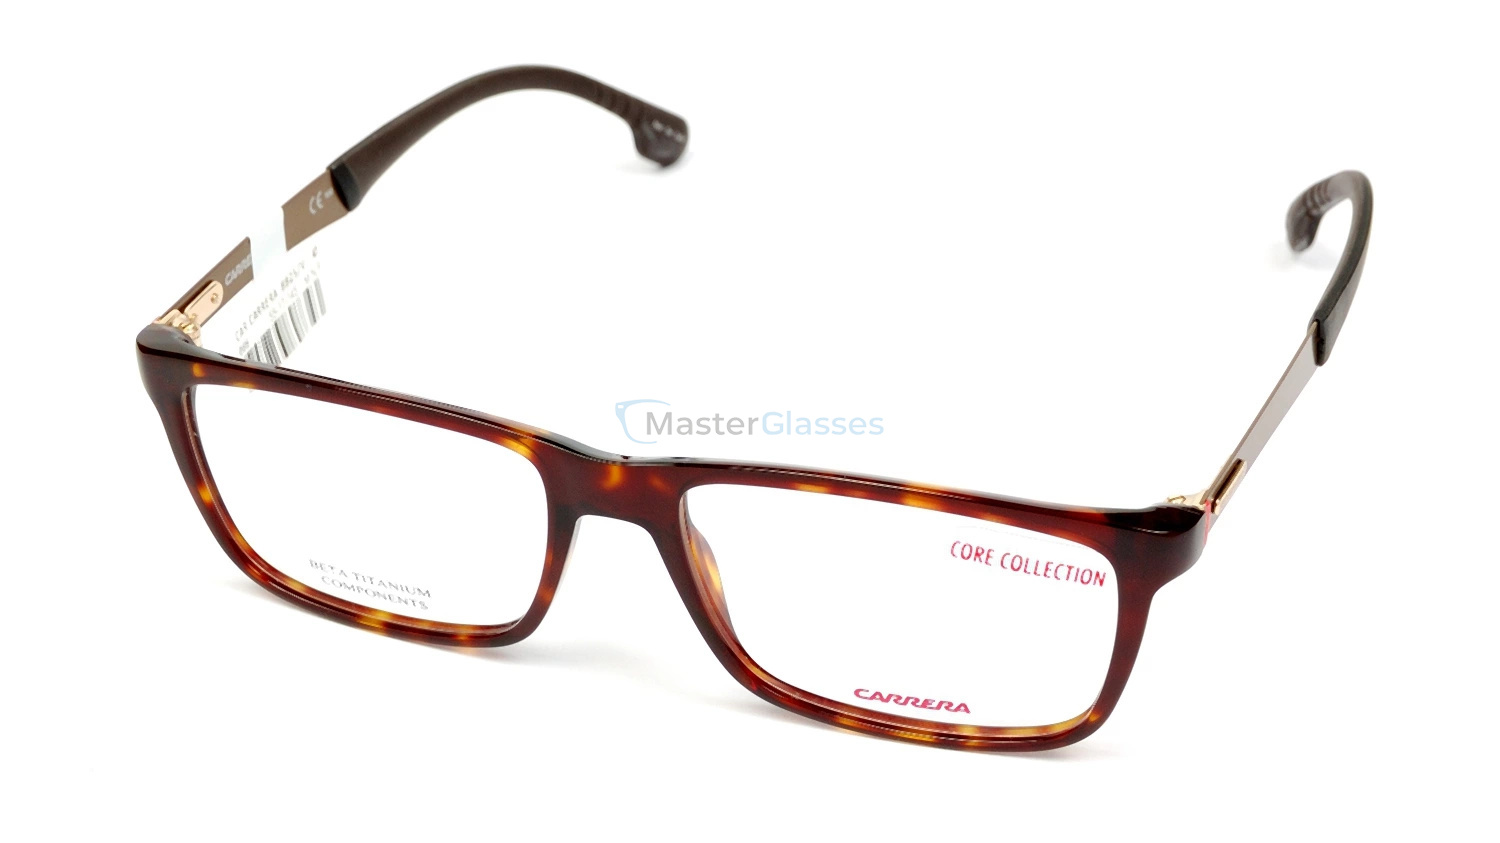 Оправа CARRERA 8825/V 086 - купить в оптике MasterGlasses